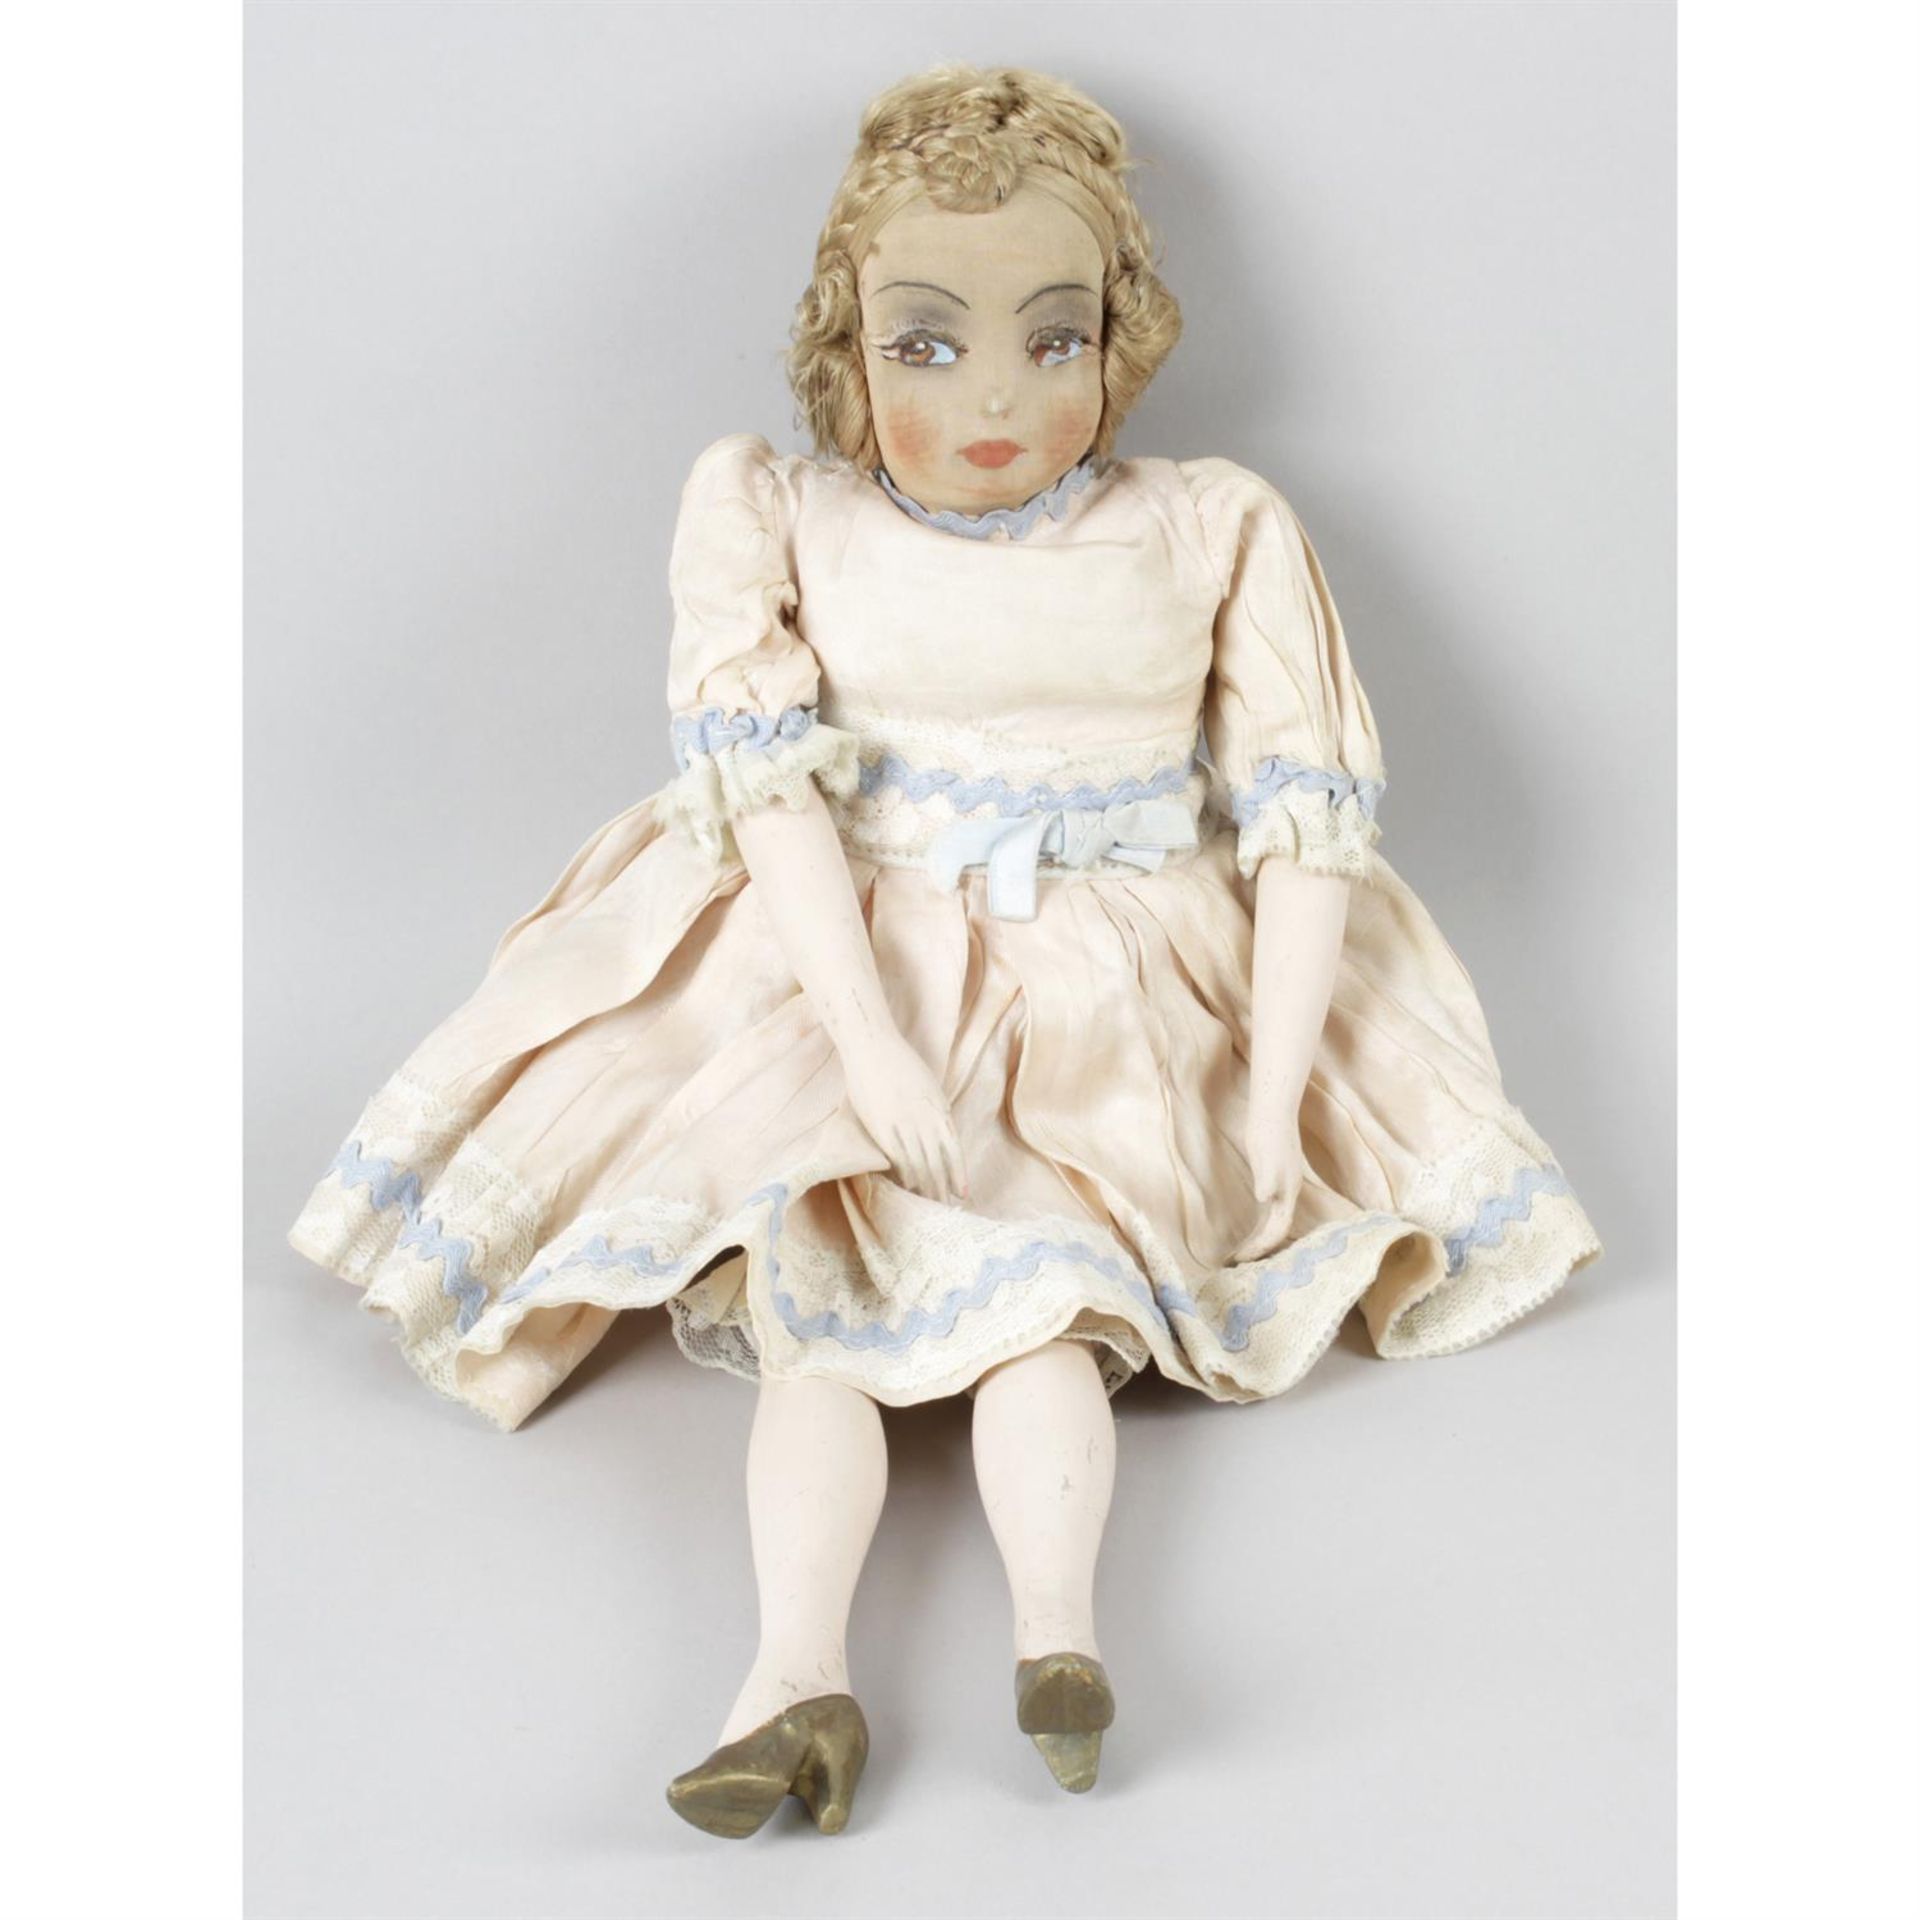 A 1920s Boudoir Doll